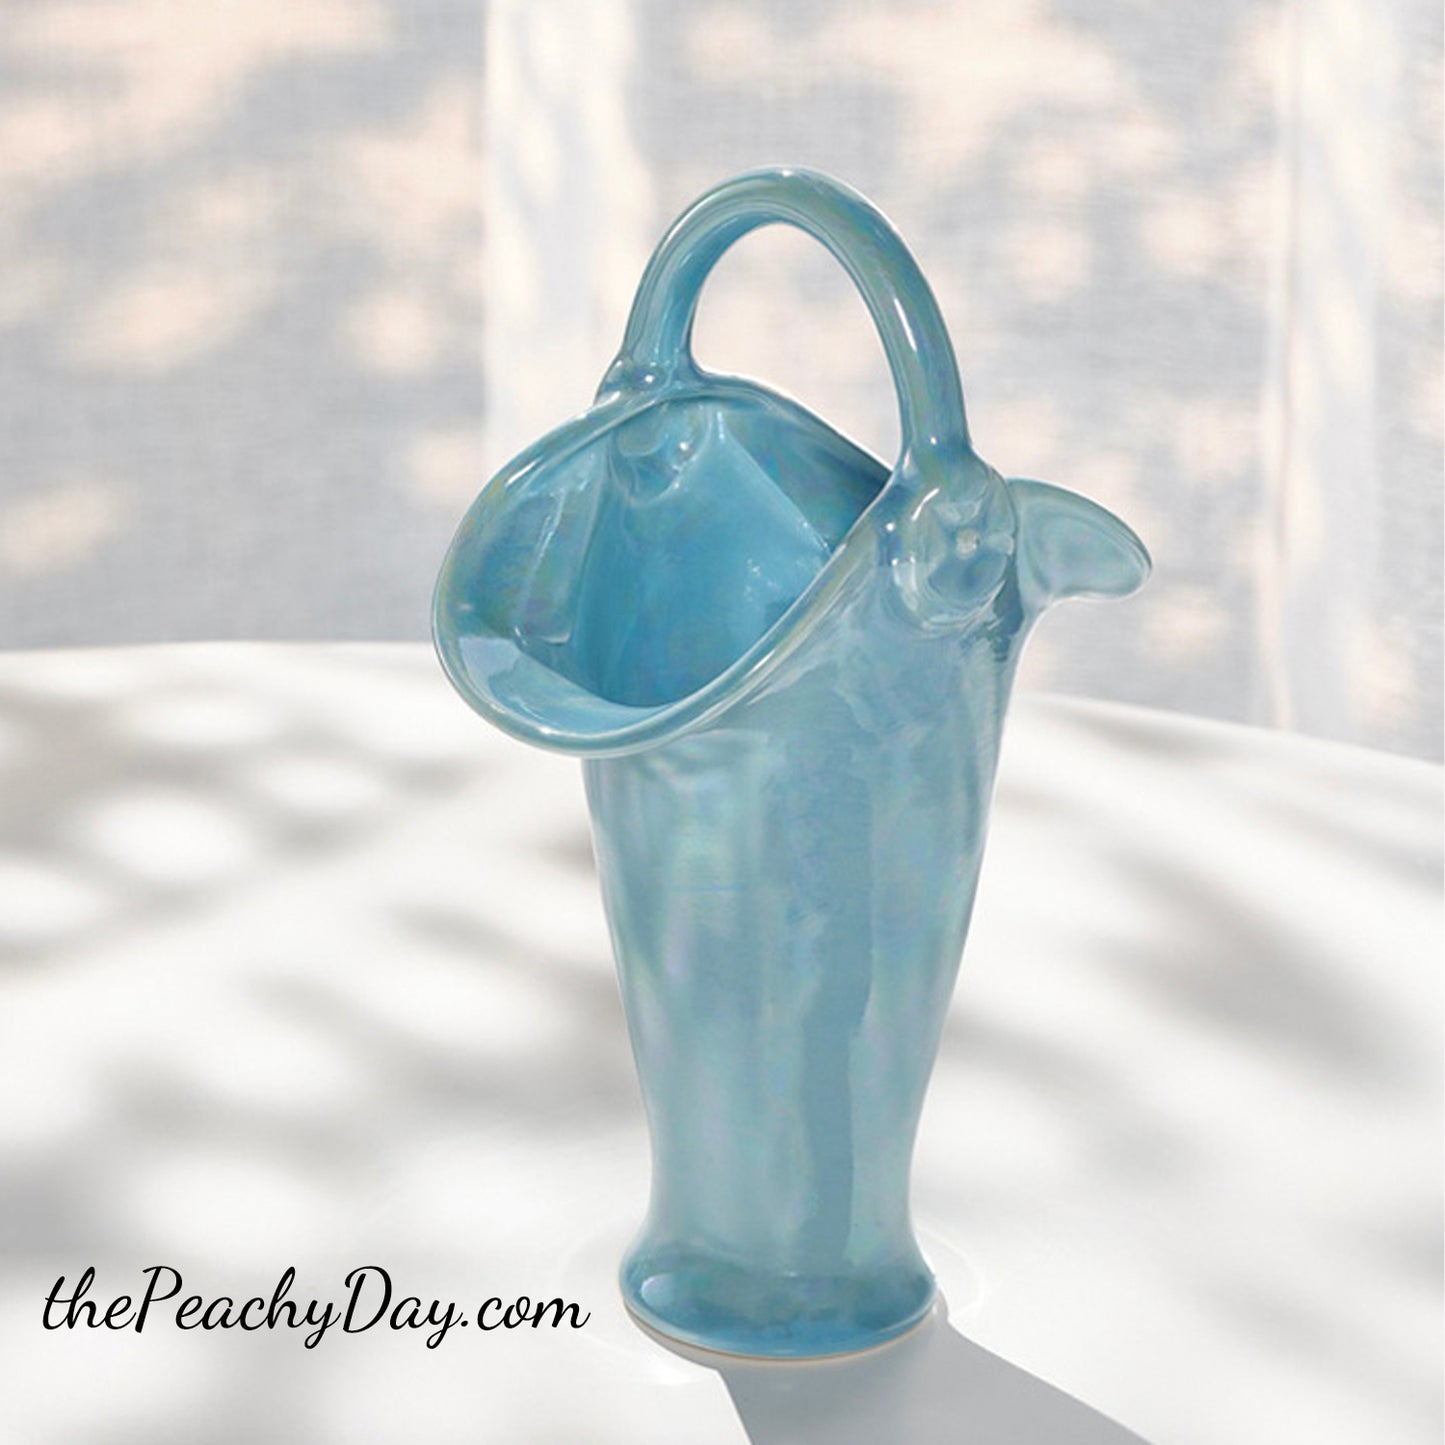 Pearlescent Blue Ceramic Vase